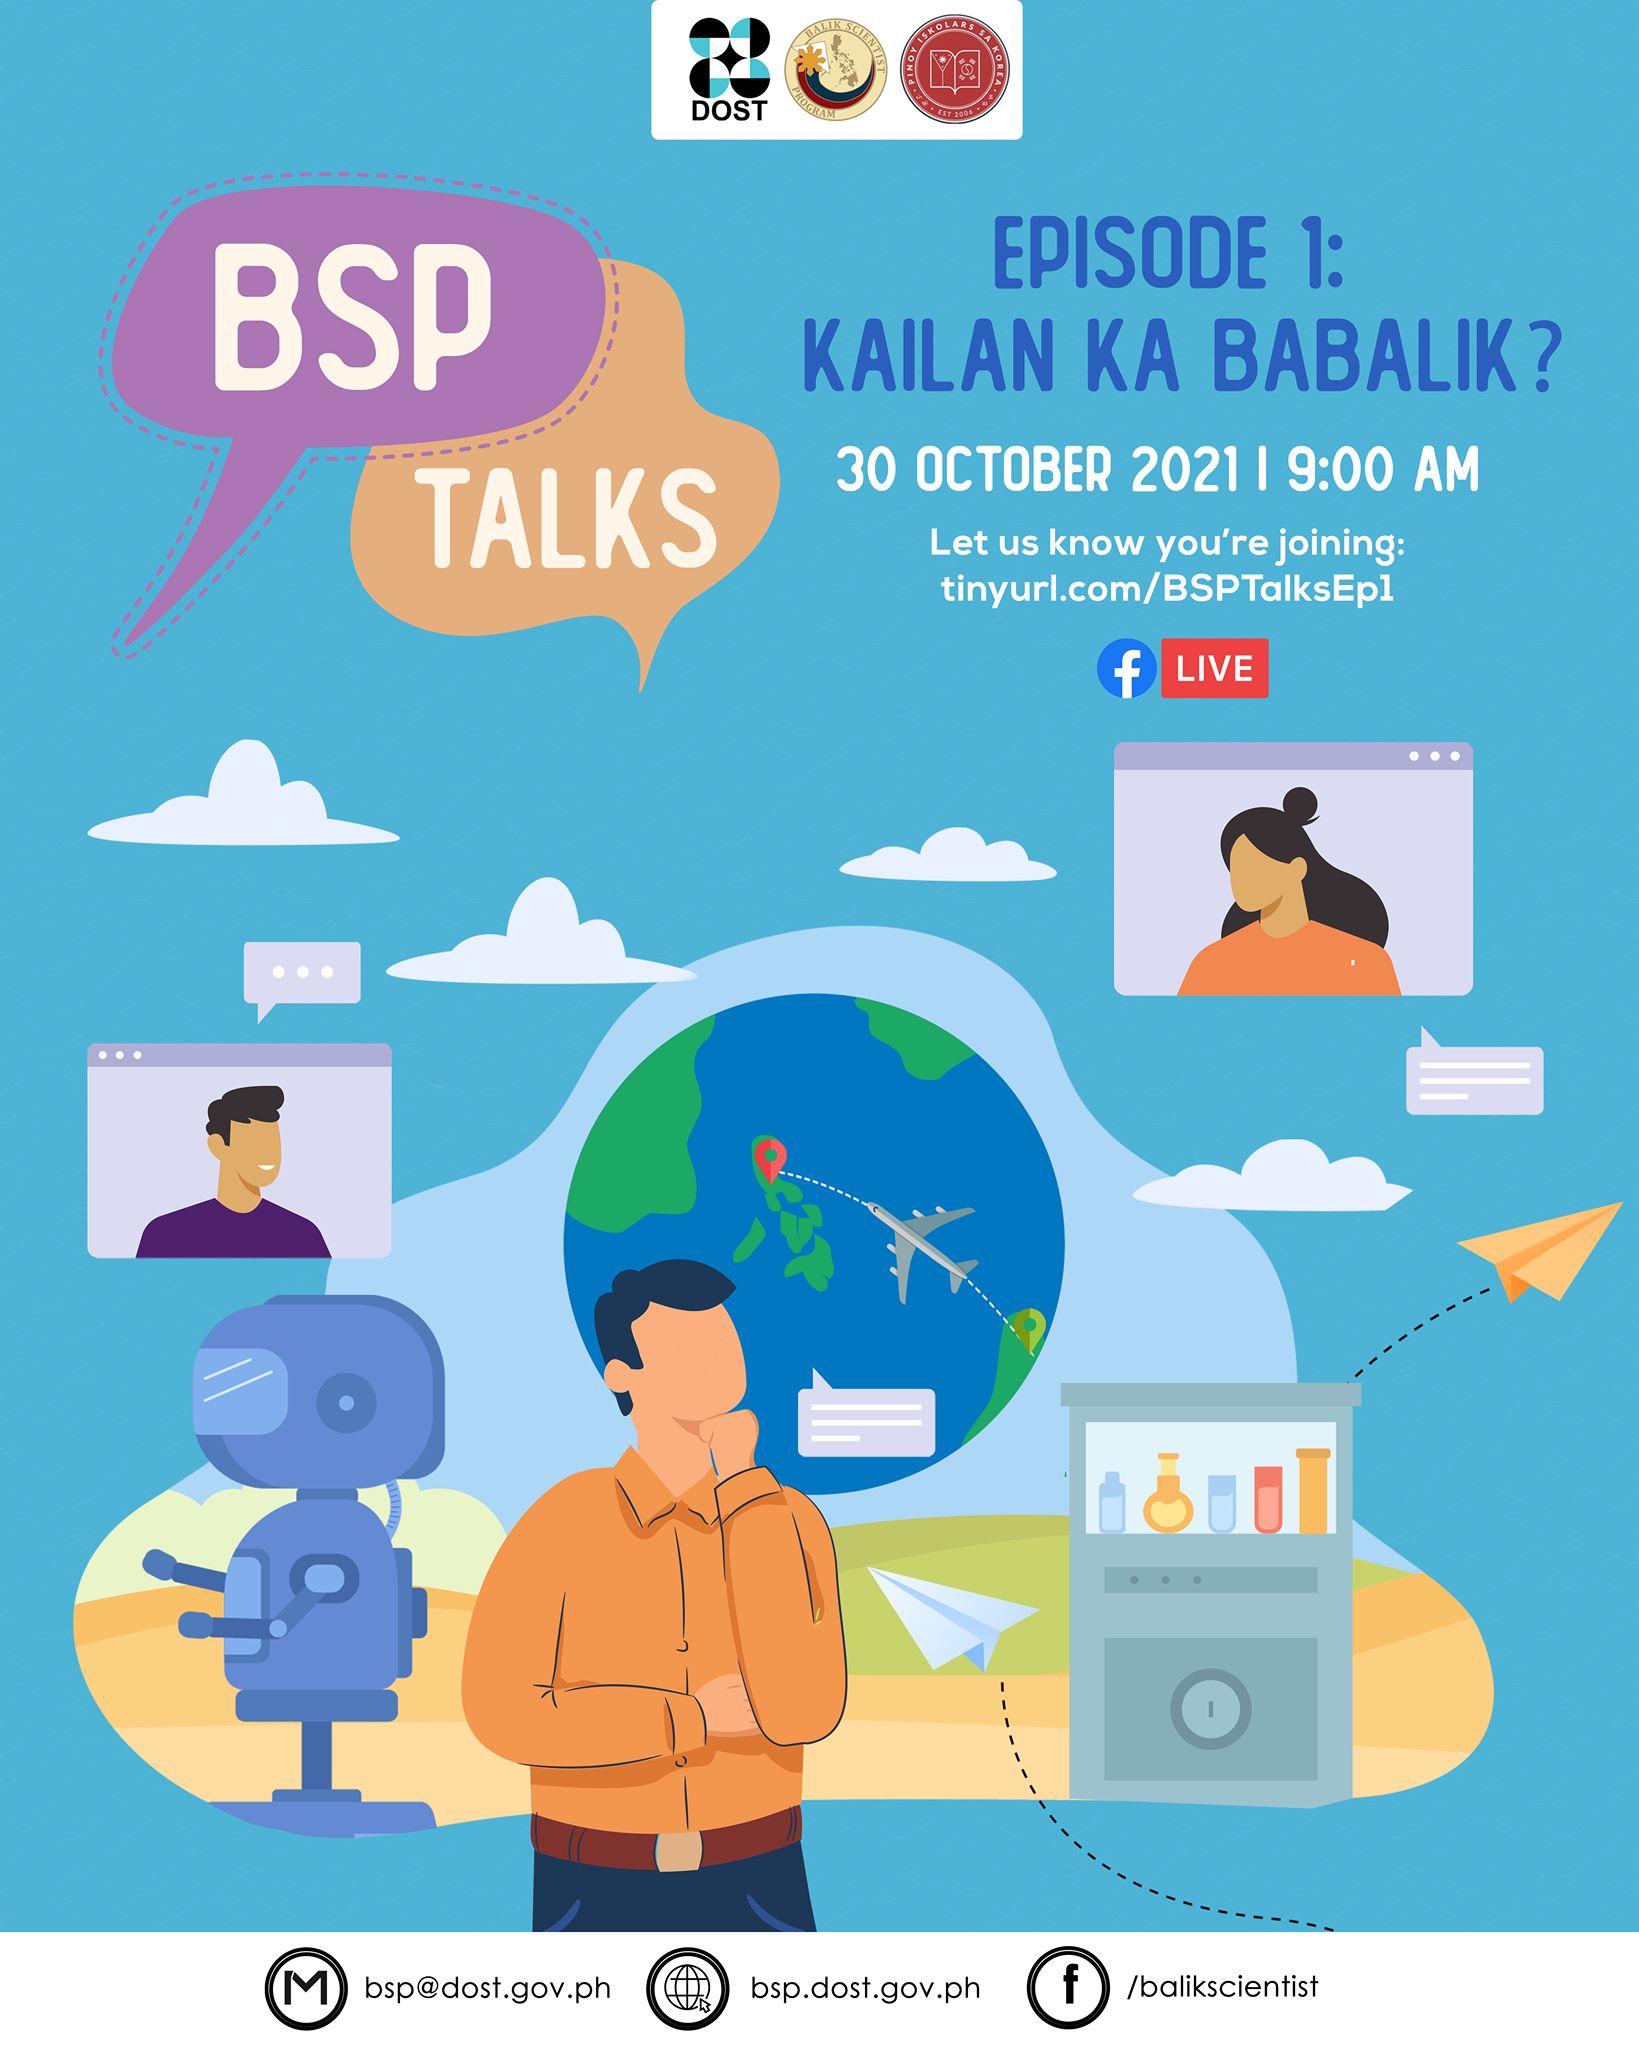 BSP Talks Episode 1: Kailan Ka Babalik?